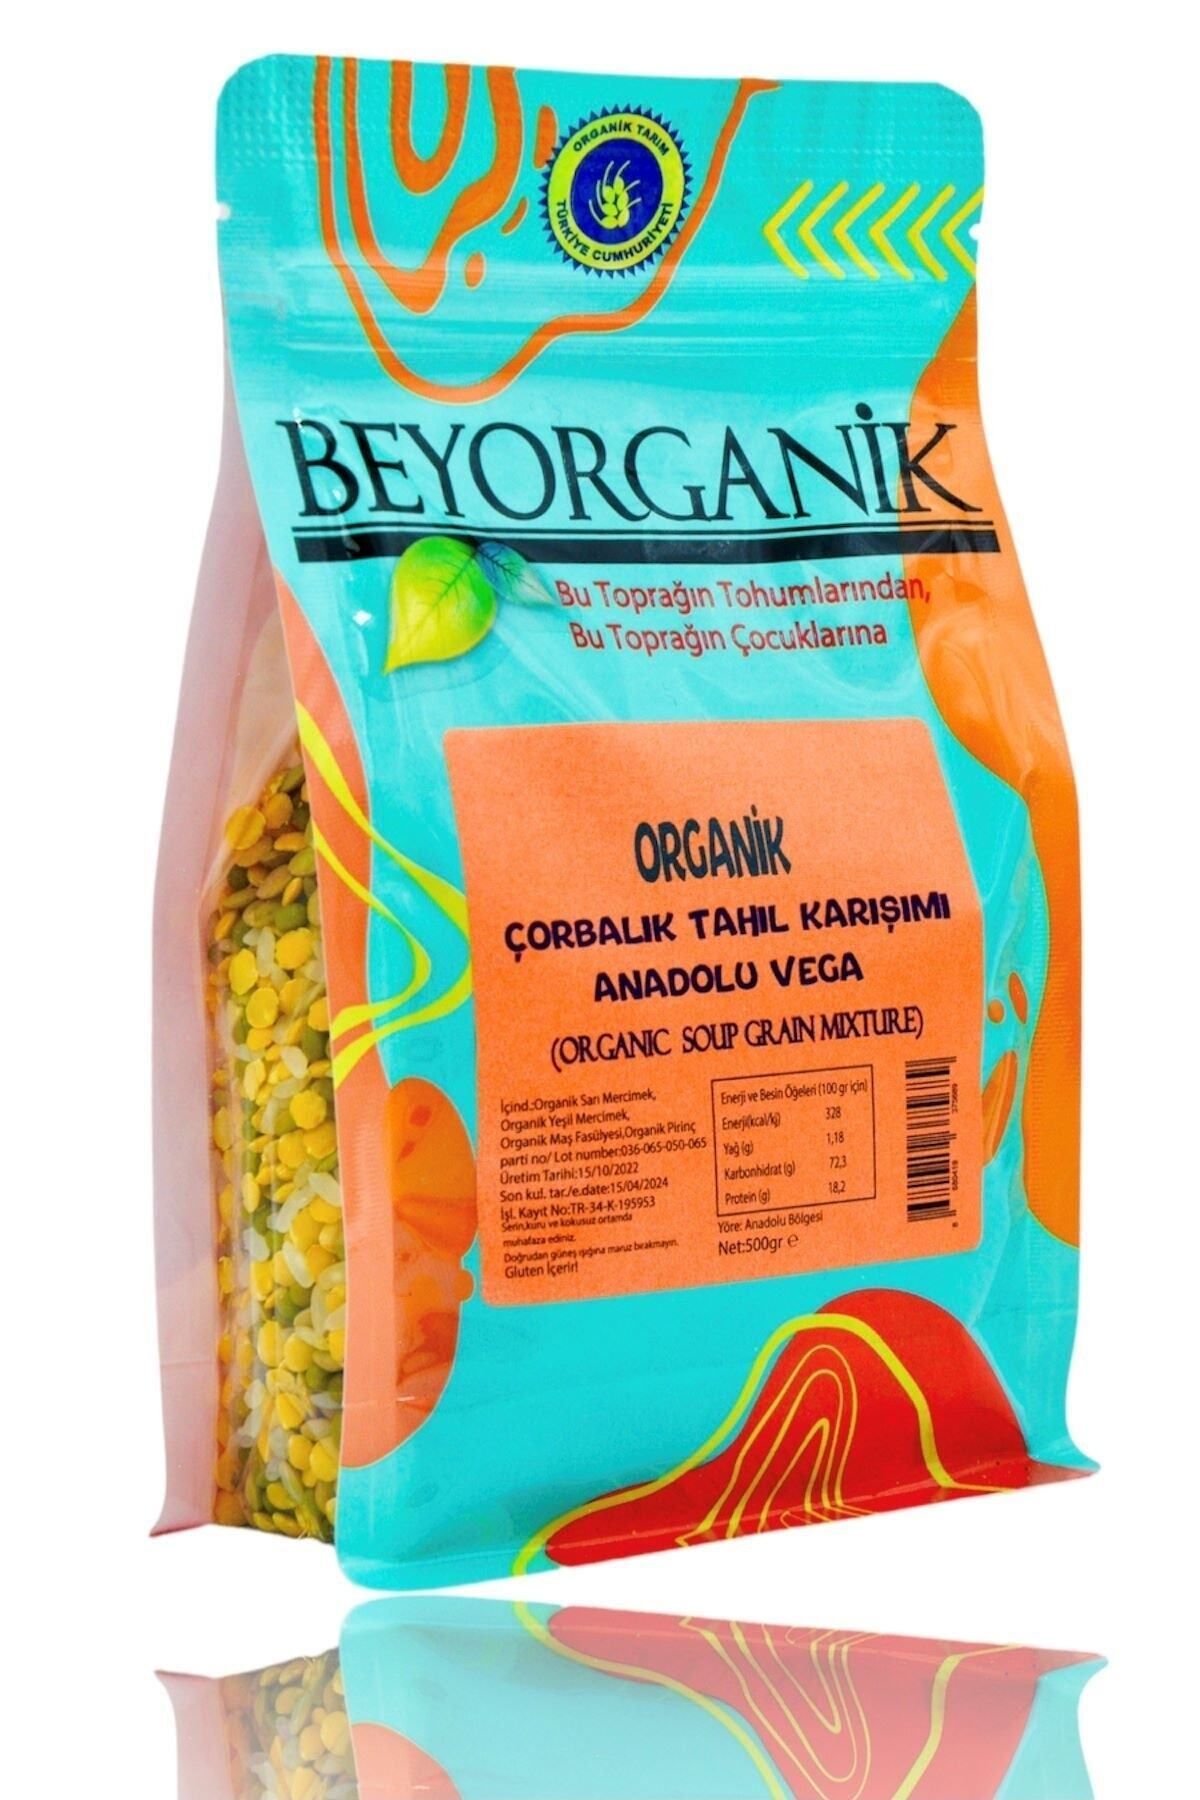 BEYORGANİK Organik Çorbalık Tahıl Karışımı Anadolu Vega 500gr